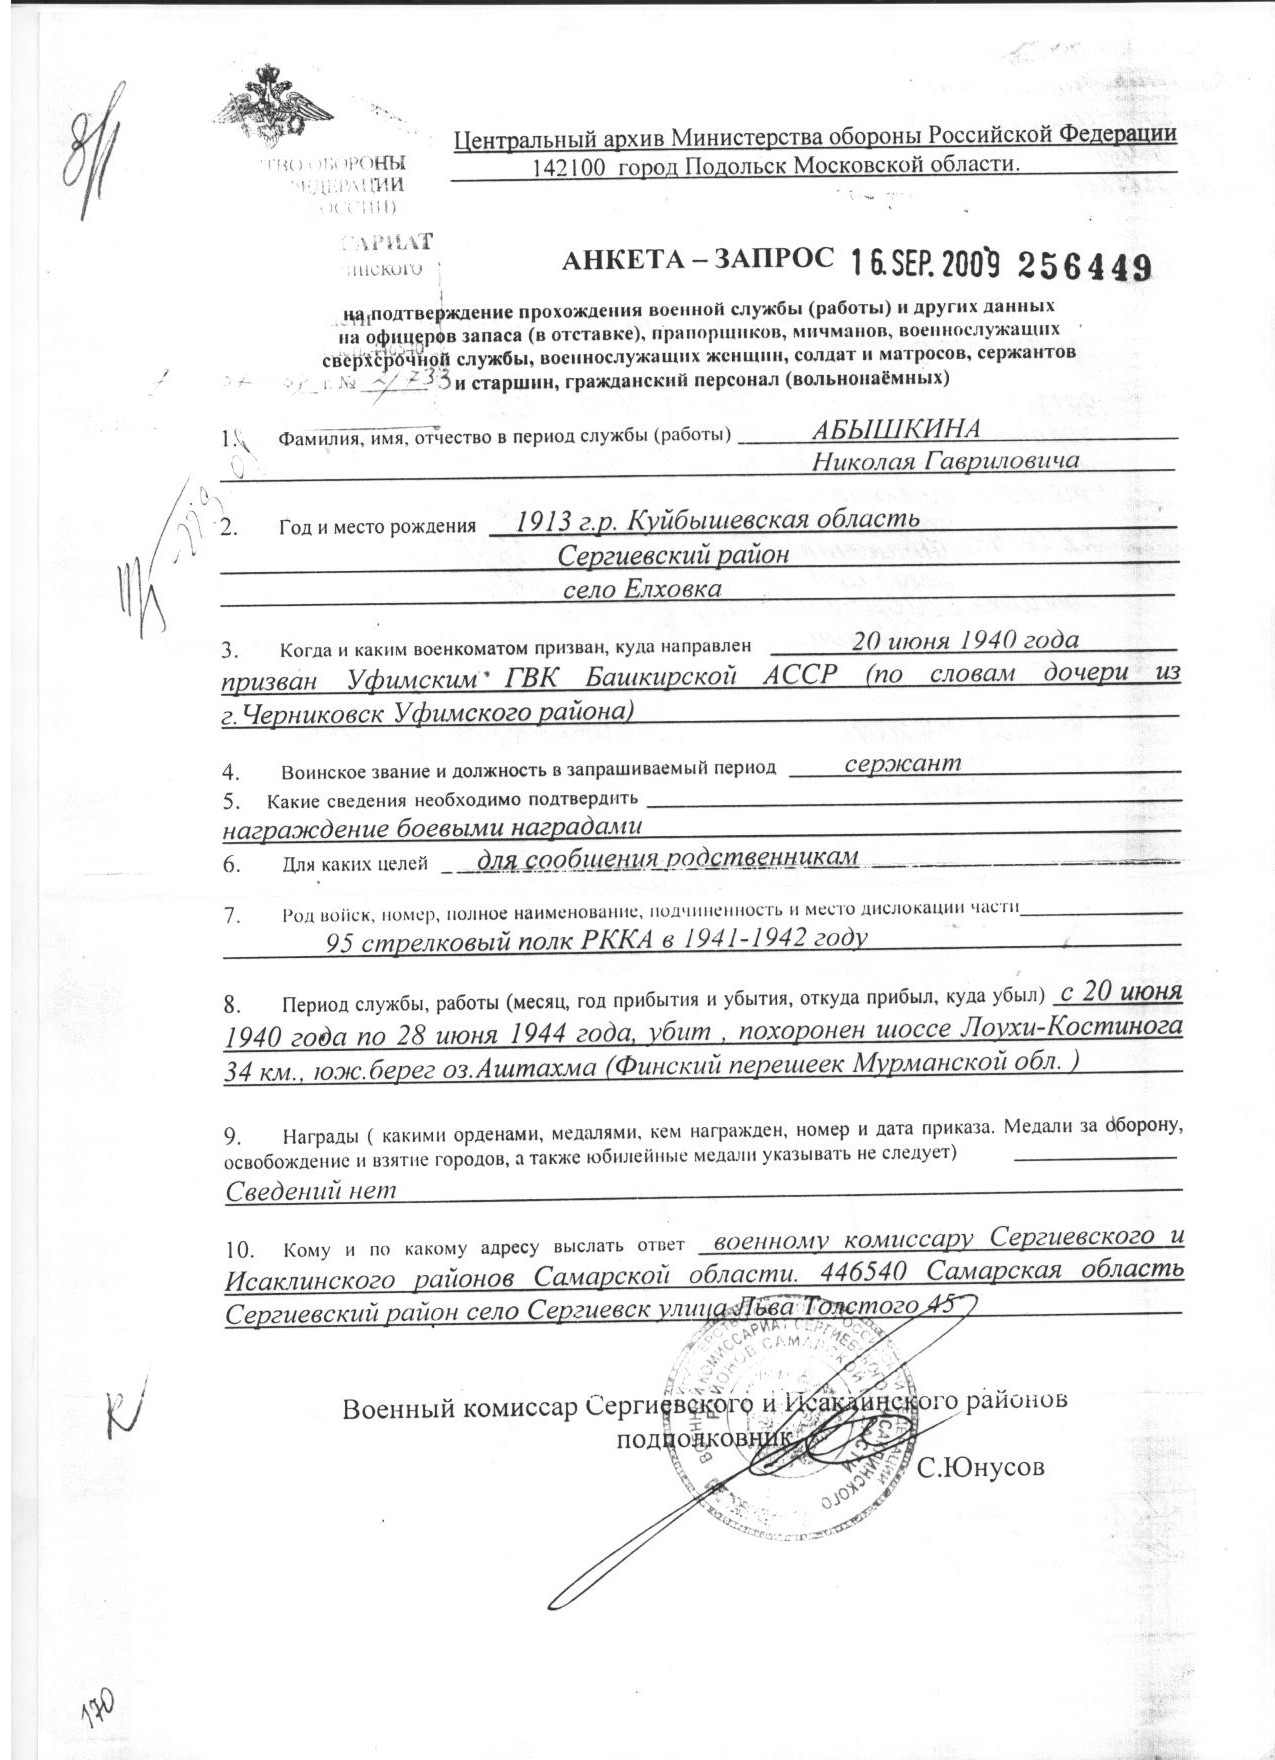 Абышкин Н. Г., анкета-запрос из Центрального архива Министерства обороны РФ